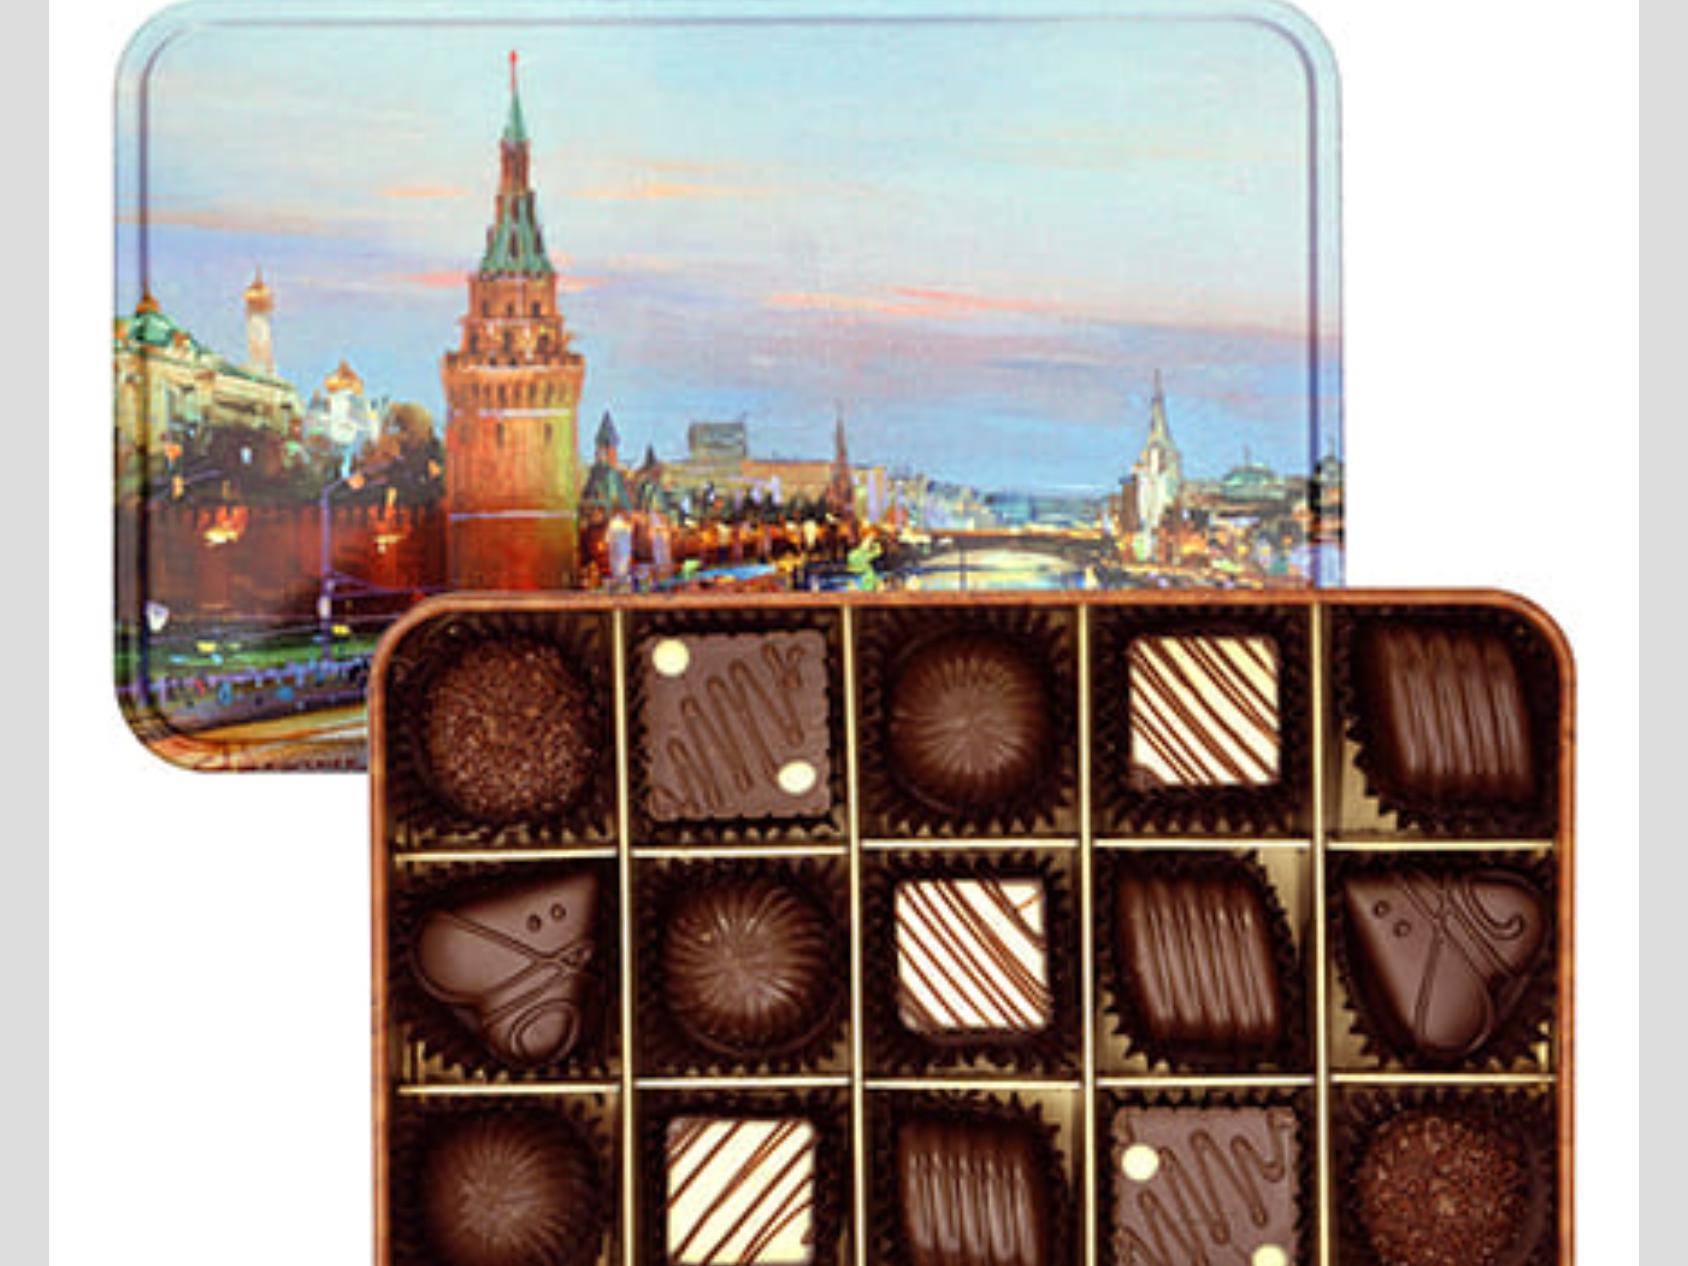 Lavrentev - шоколадные подарки в наборах из Санкт-Петербурга